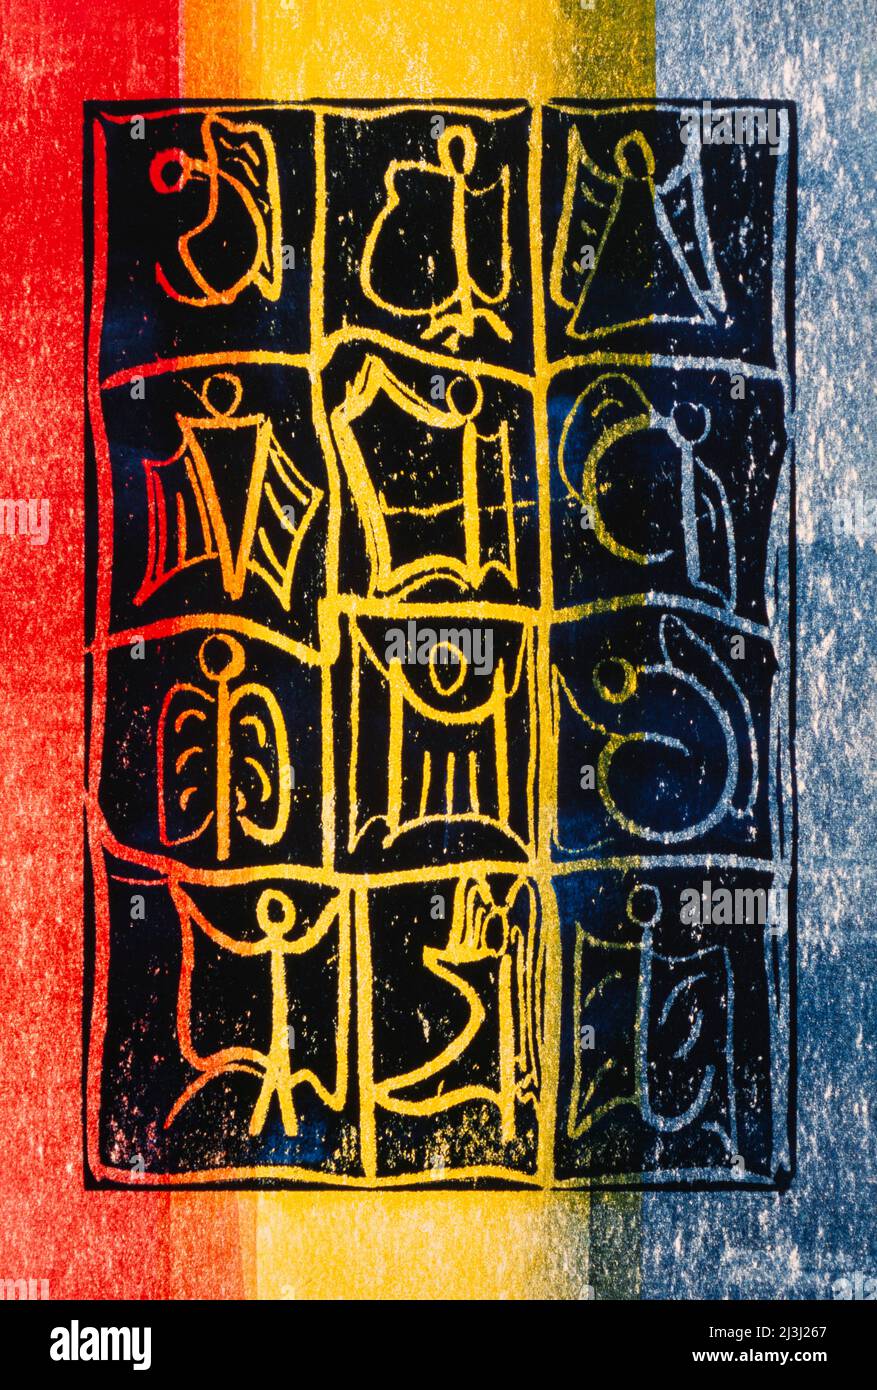 Grafikdruck von Gisela Oberst Twelve Angels, abstrakt, rot, gelb, blau, Engelsfigur, Engelsdarstellung, geflügelte, mystische, himmlische Wesen Stockfoto